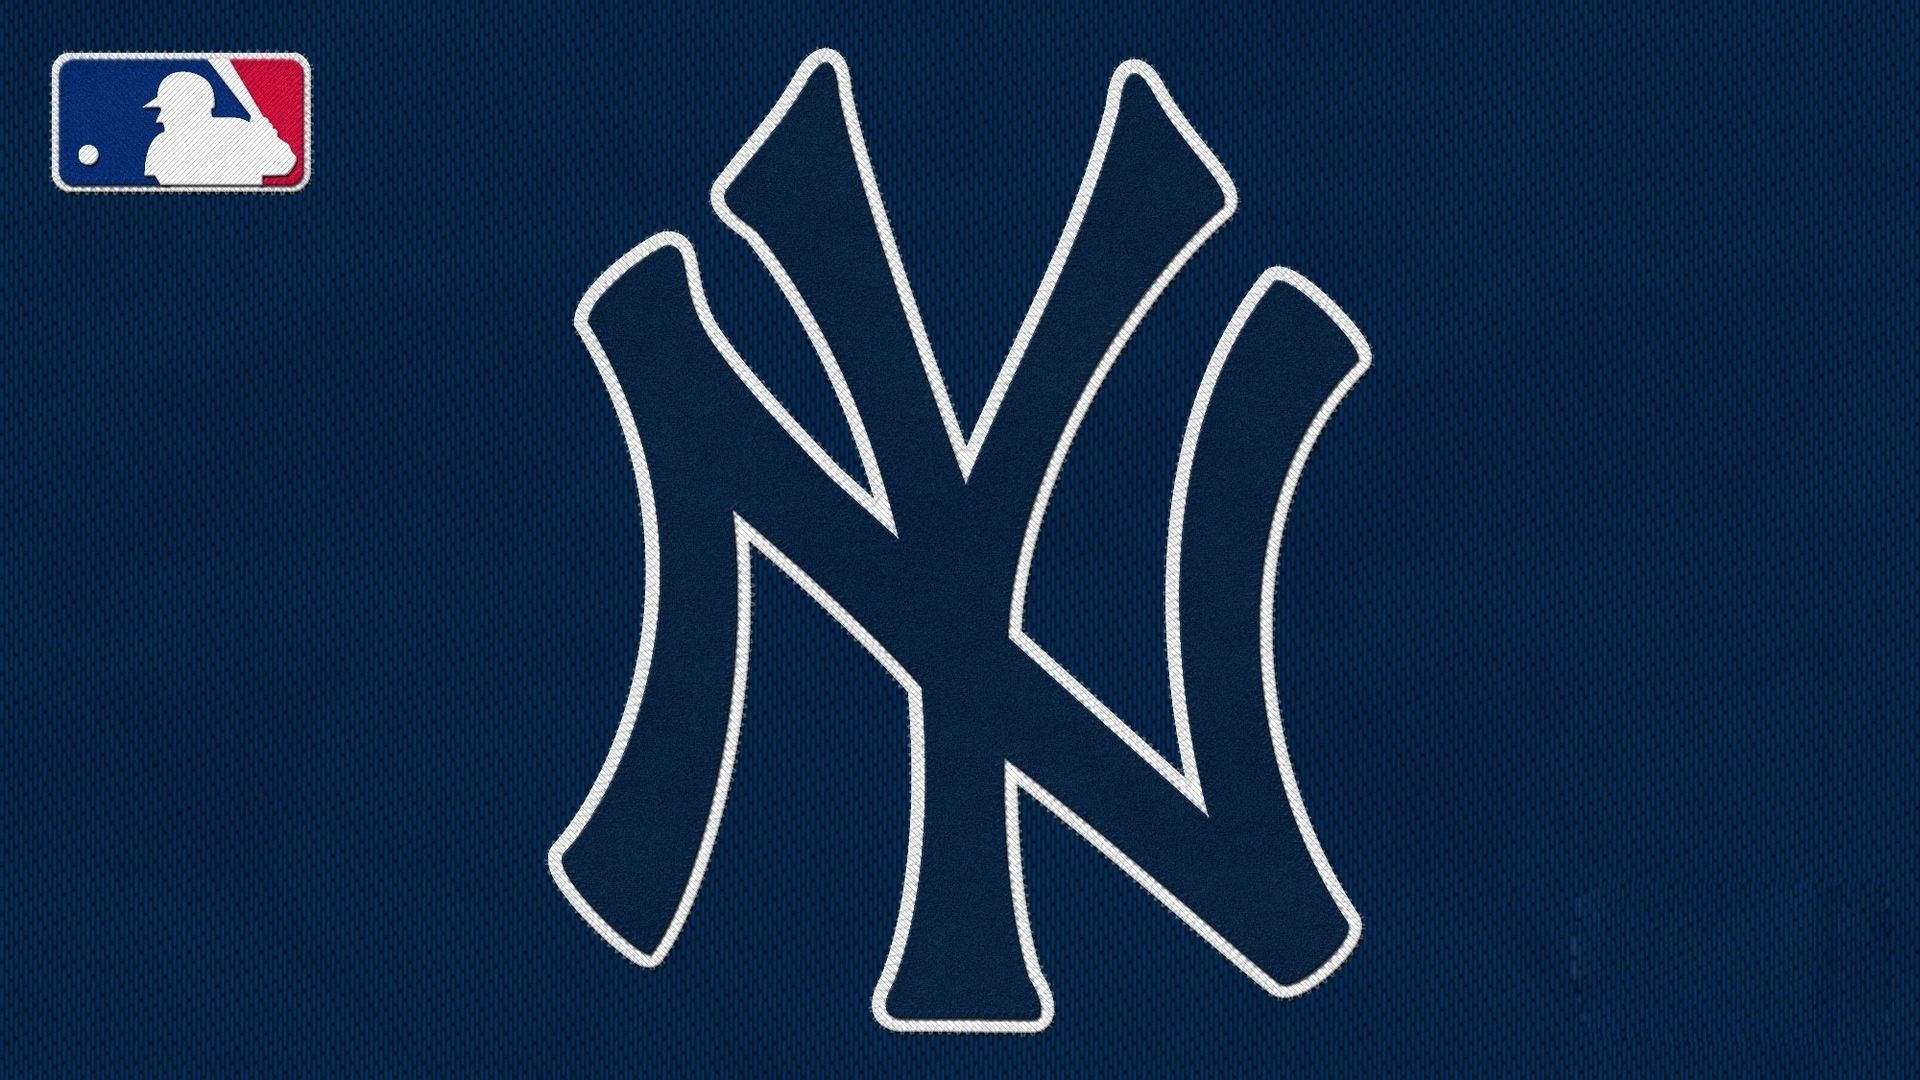 New York Yankees wallpaper download